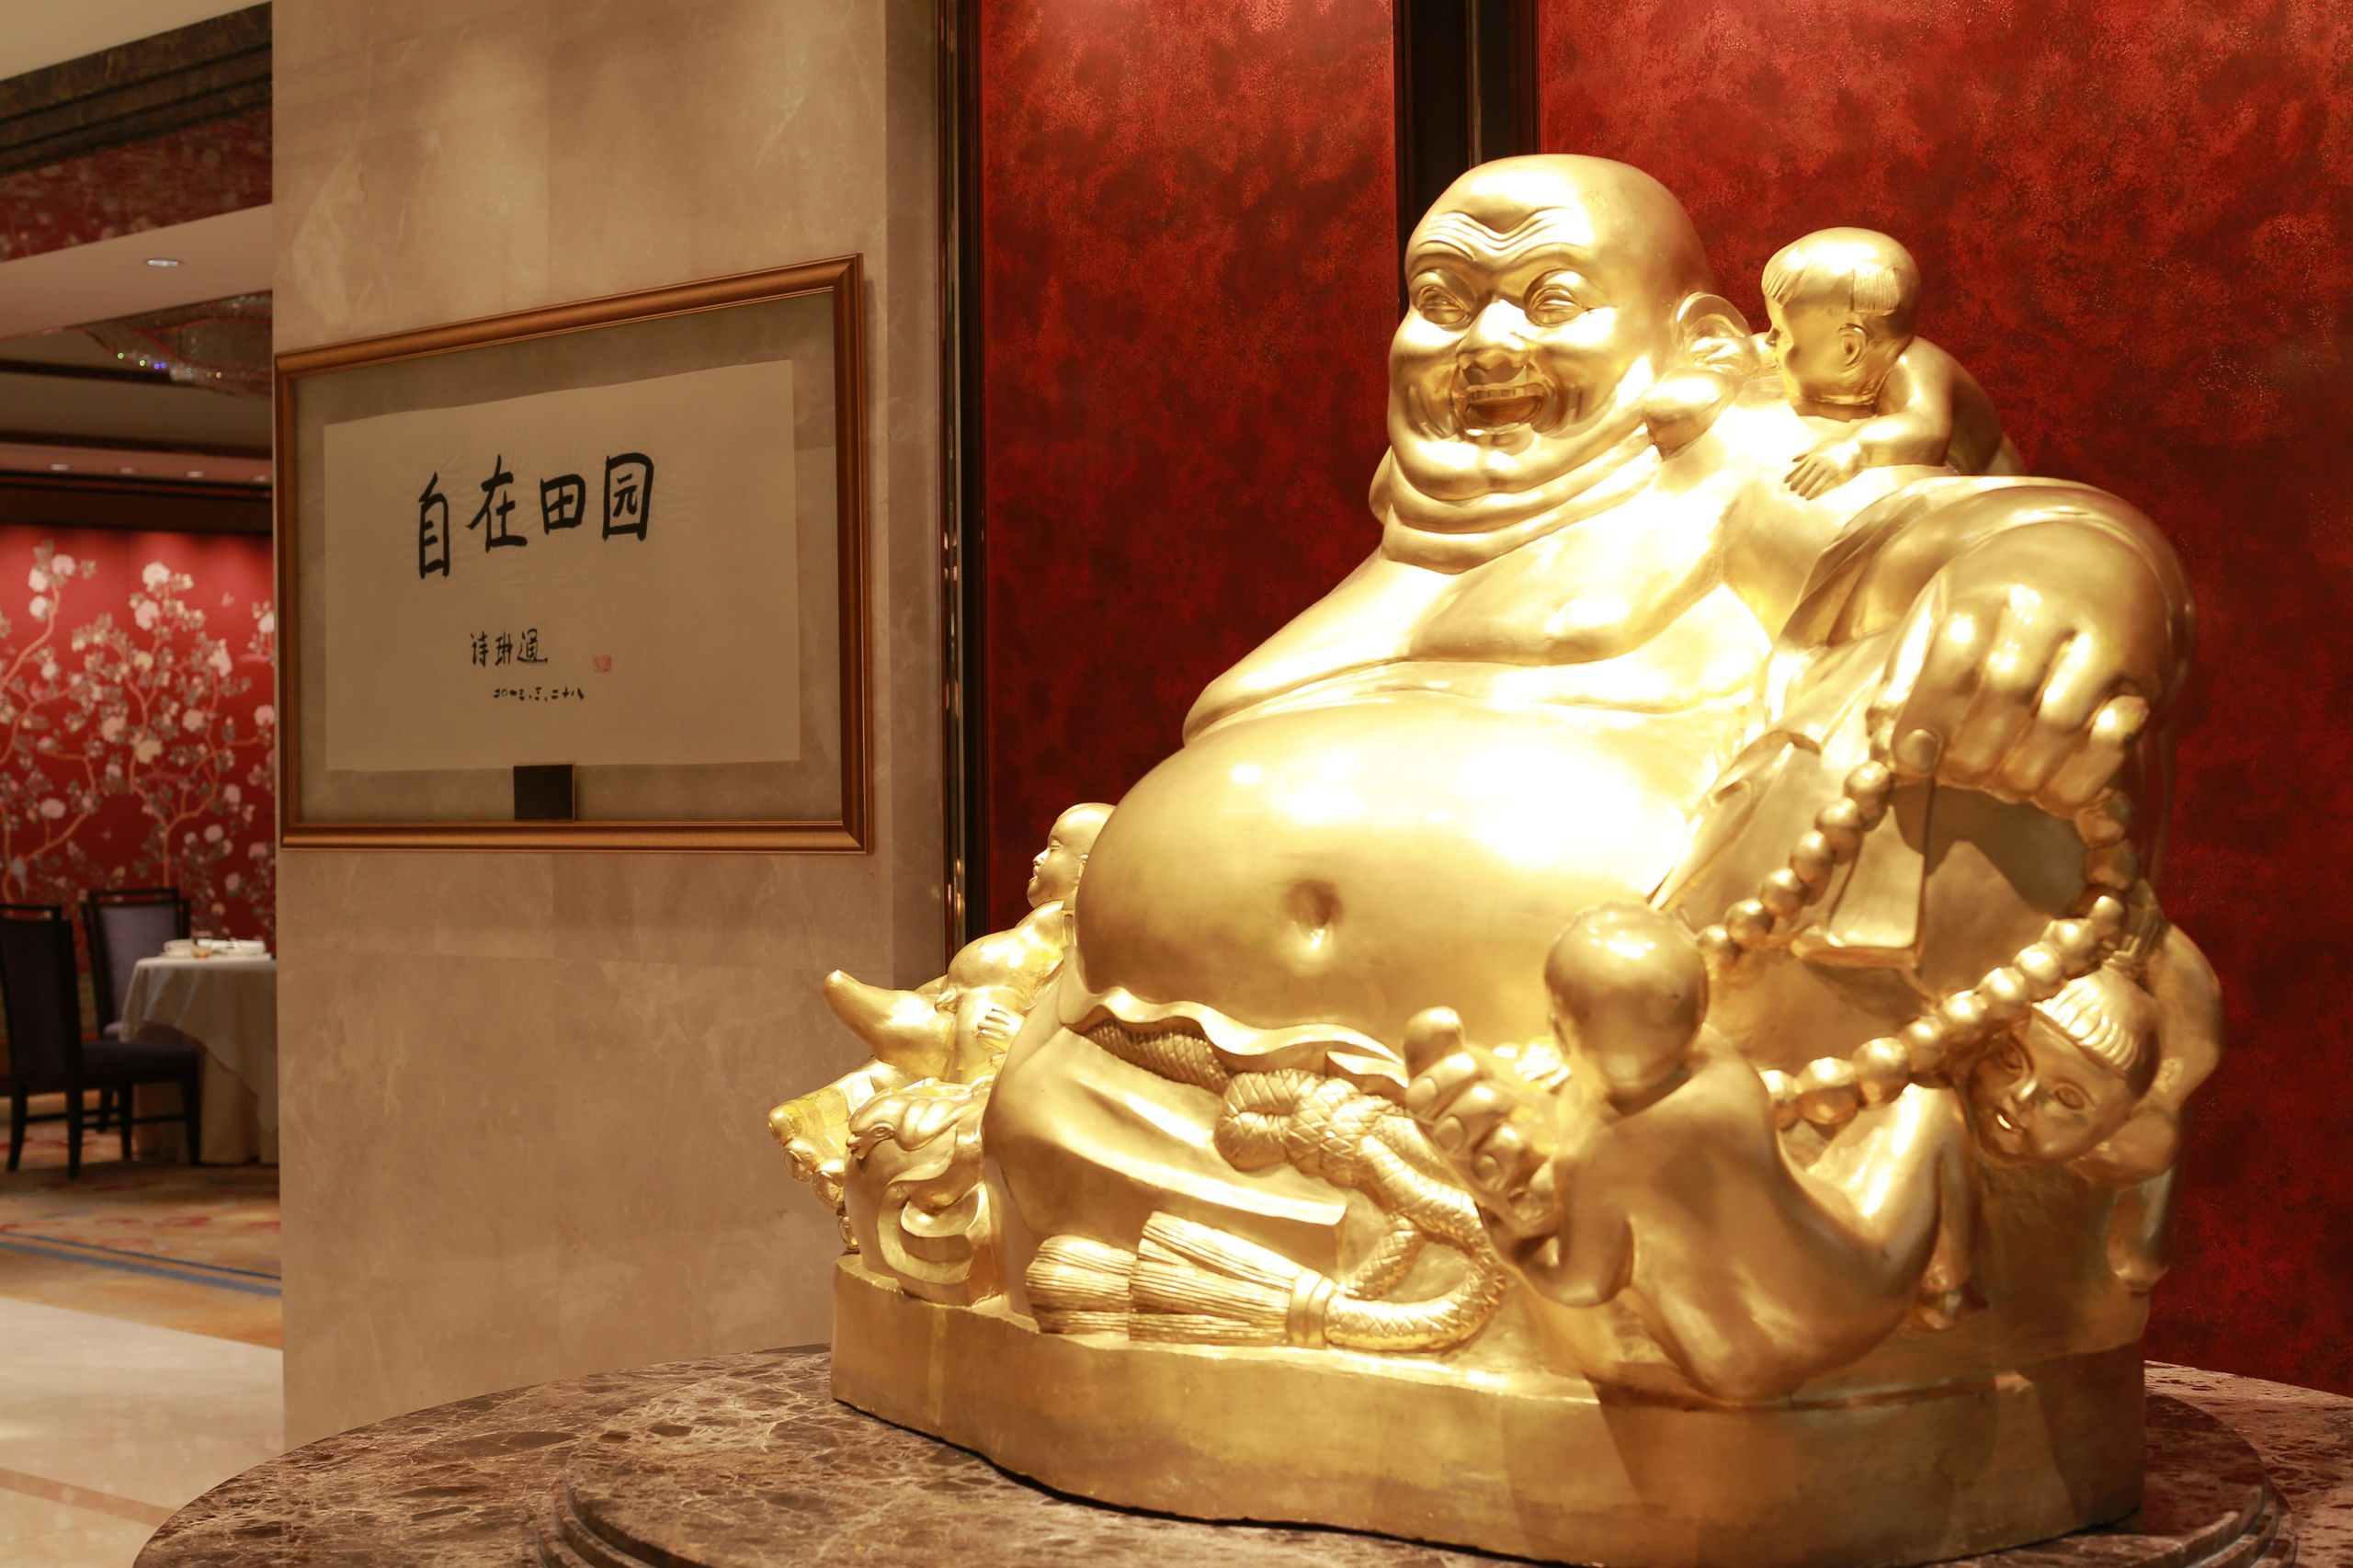 07. Shang Palace ambience